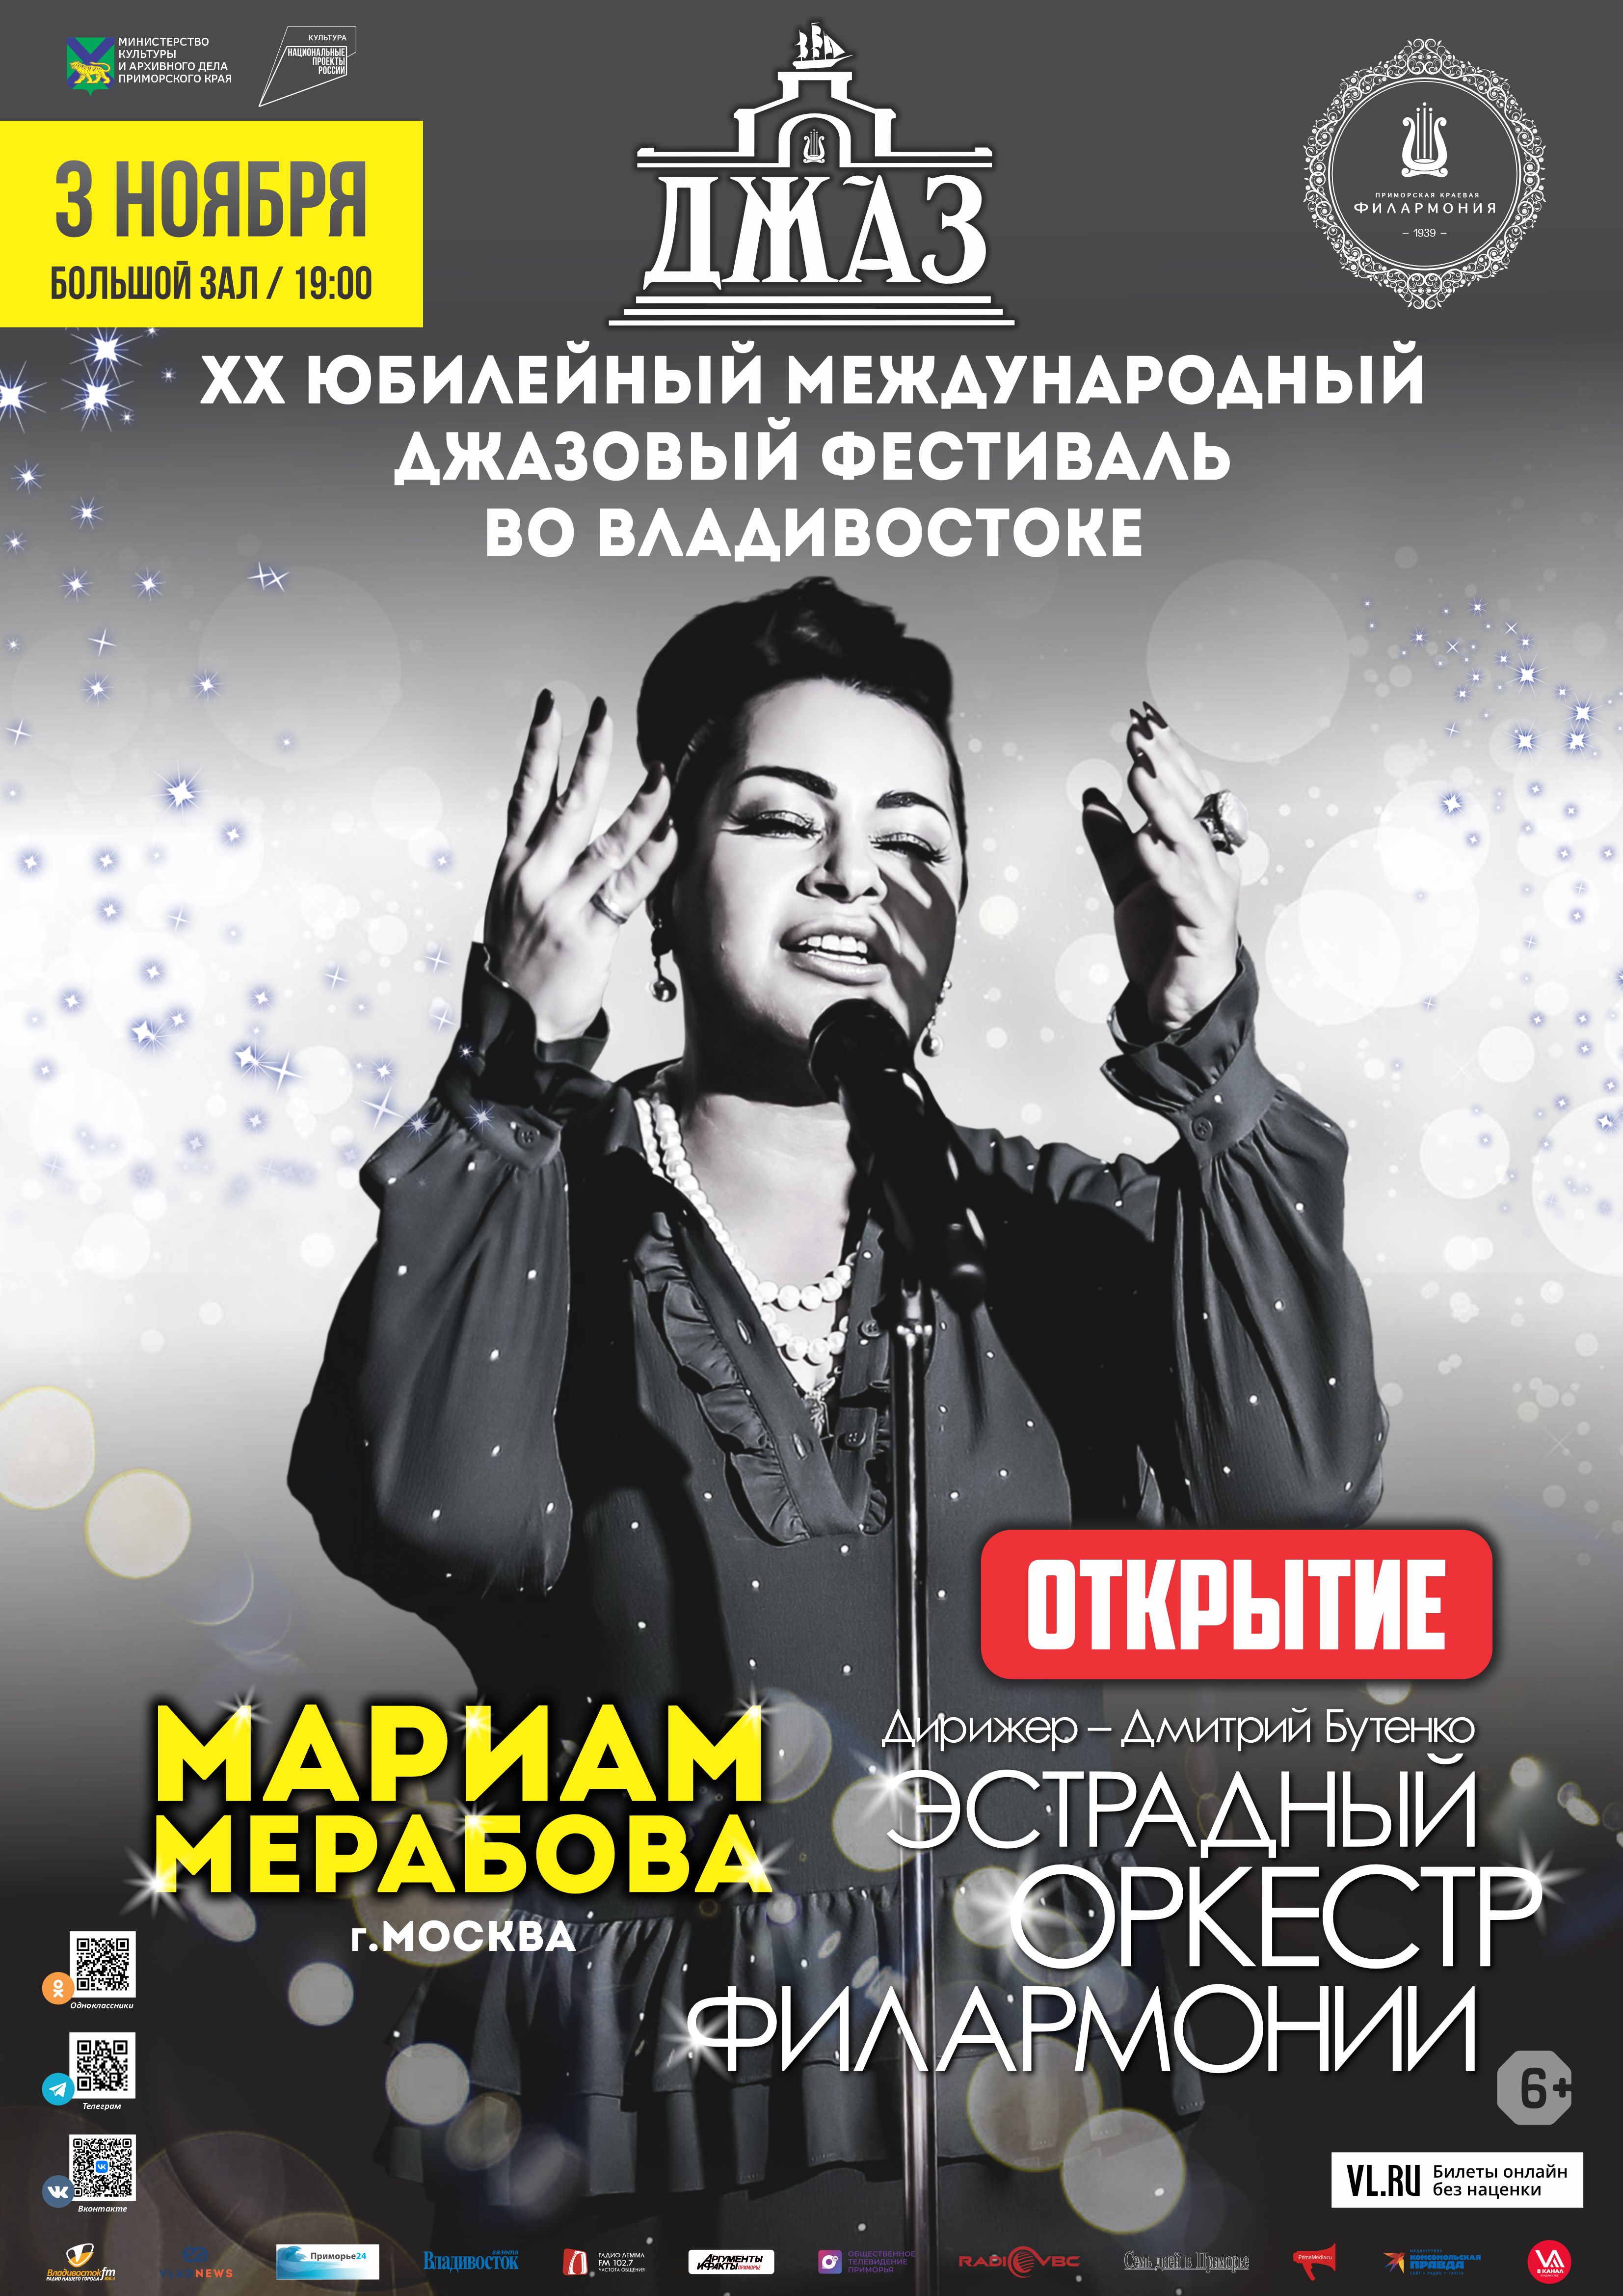 3 ноября ХХ Международный джазовый фестиваль во Владивостоке Открытие Мариам Мерабова (Москва) и Эстрадный оркестр Приморской филармонии